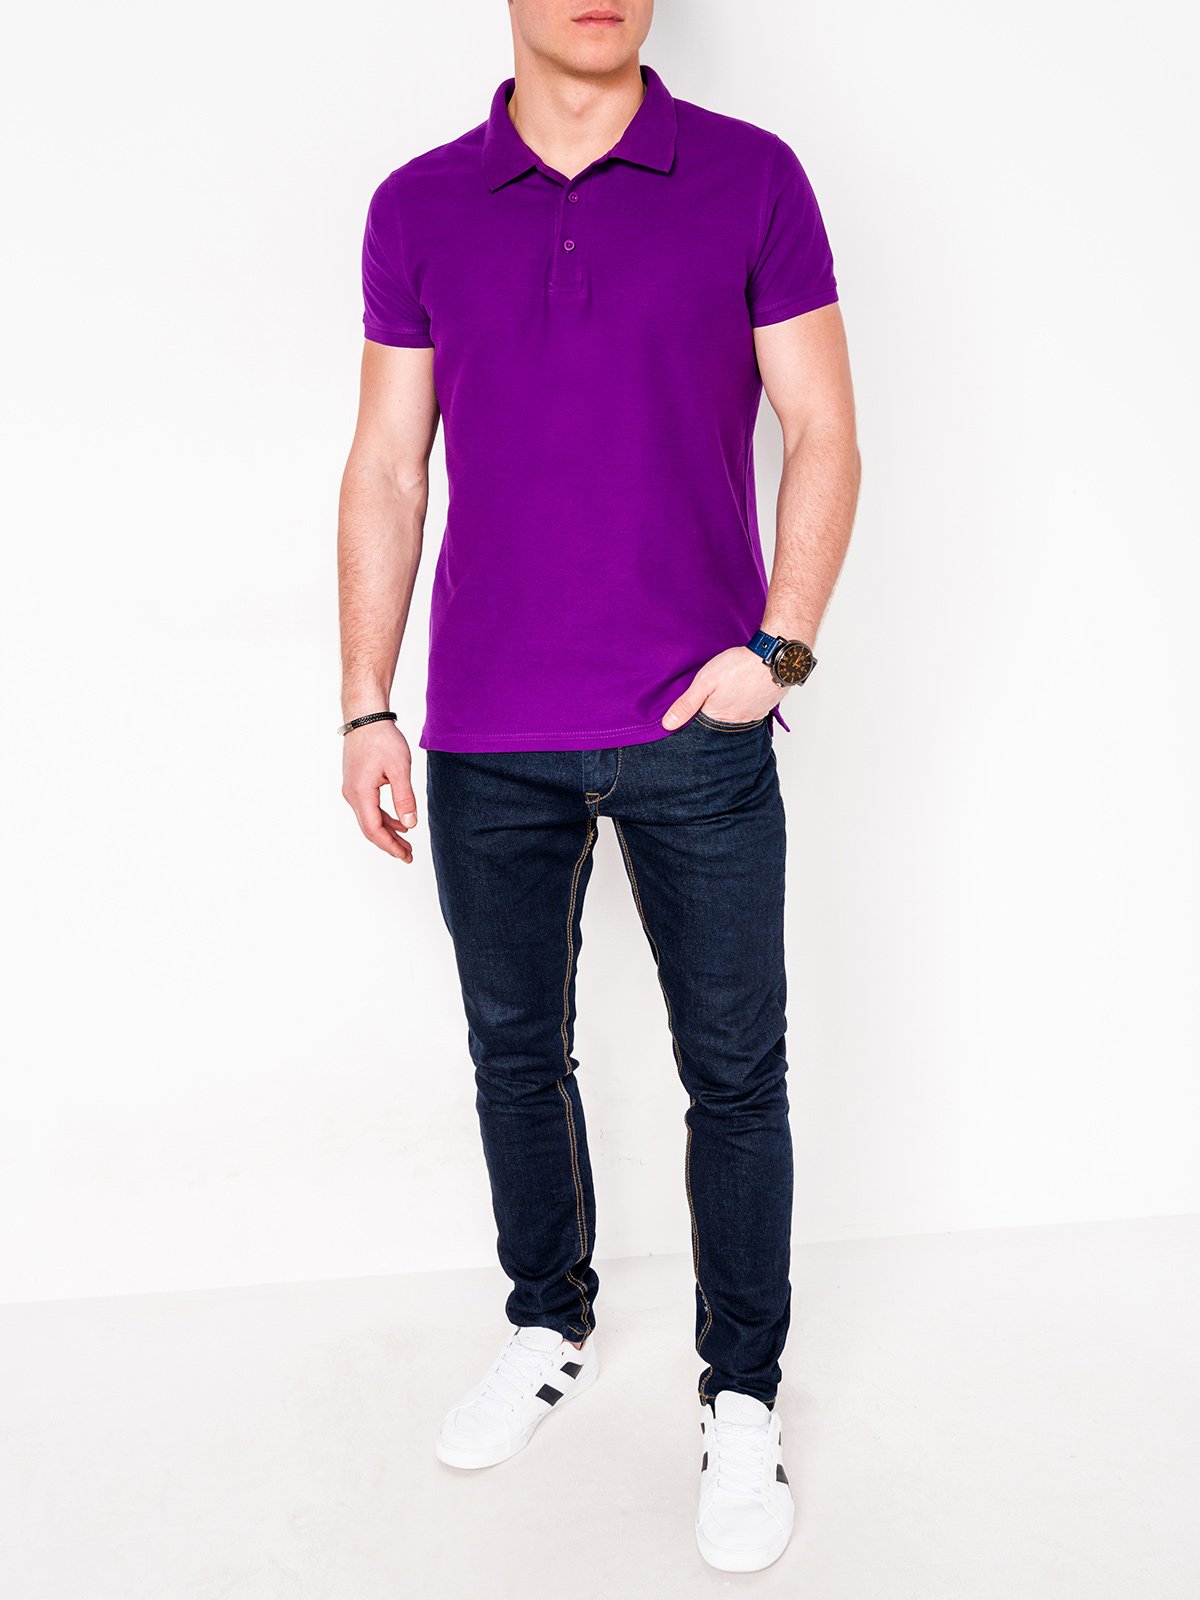 Men's plain polo shirt S715 - violet | MODONE wholesale - Clothing For Men